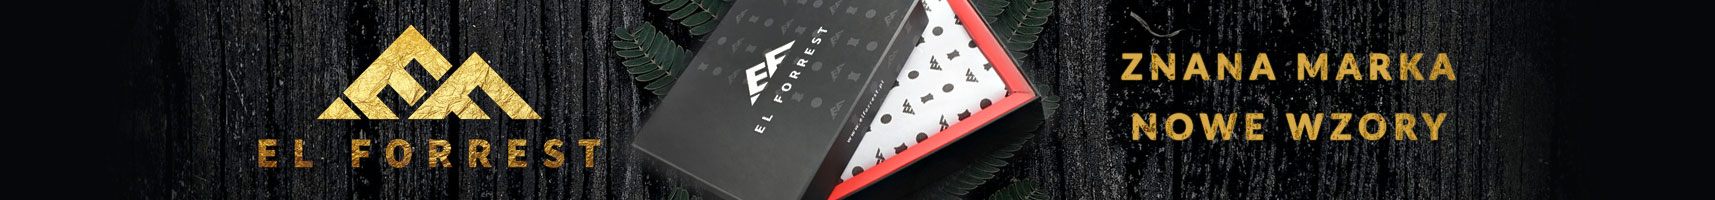 EL FORREST - wiele wzorów dobrze znanej marki portfeli ze skóry